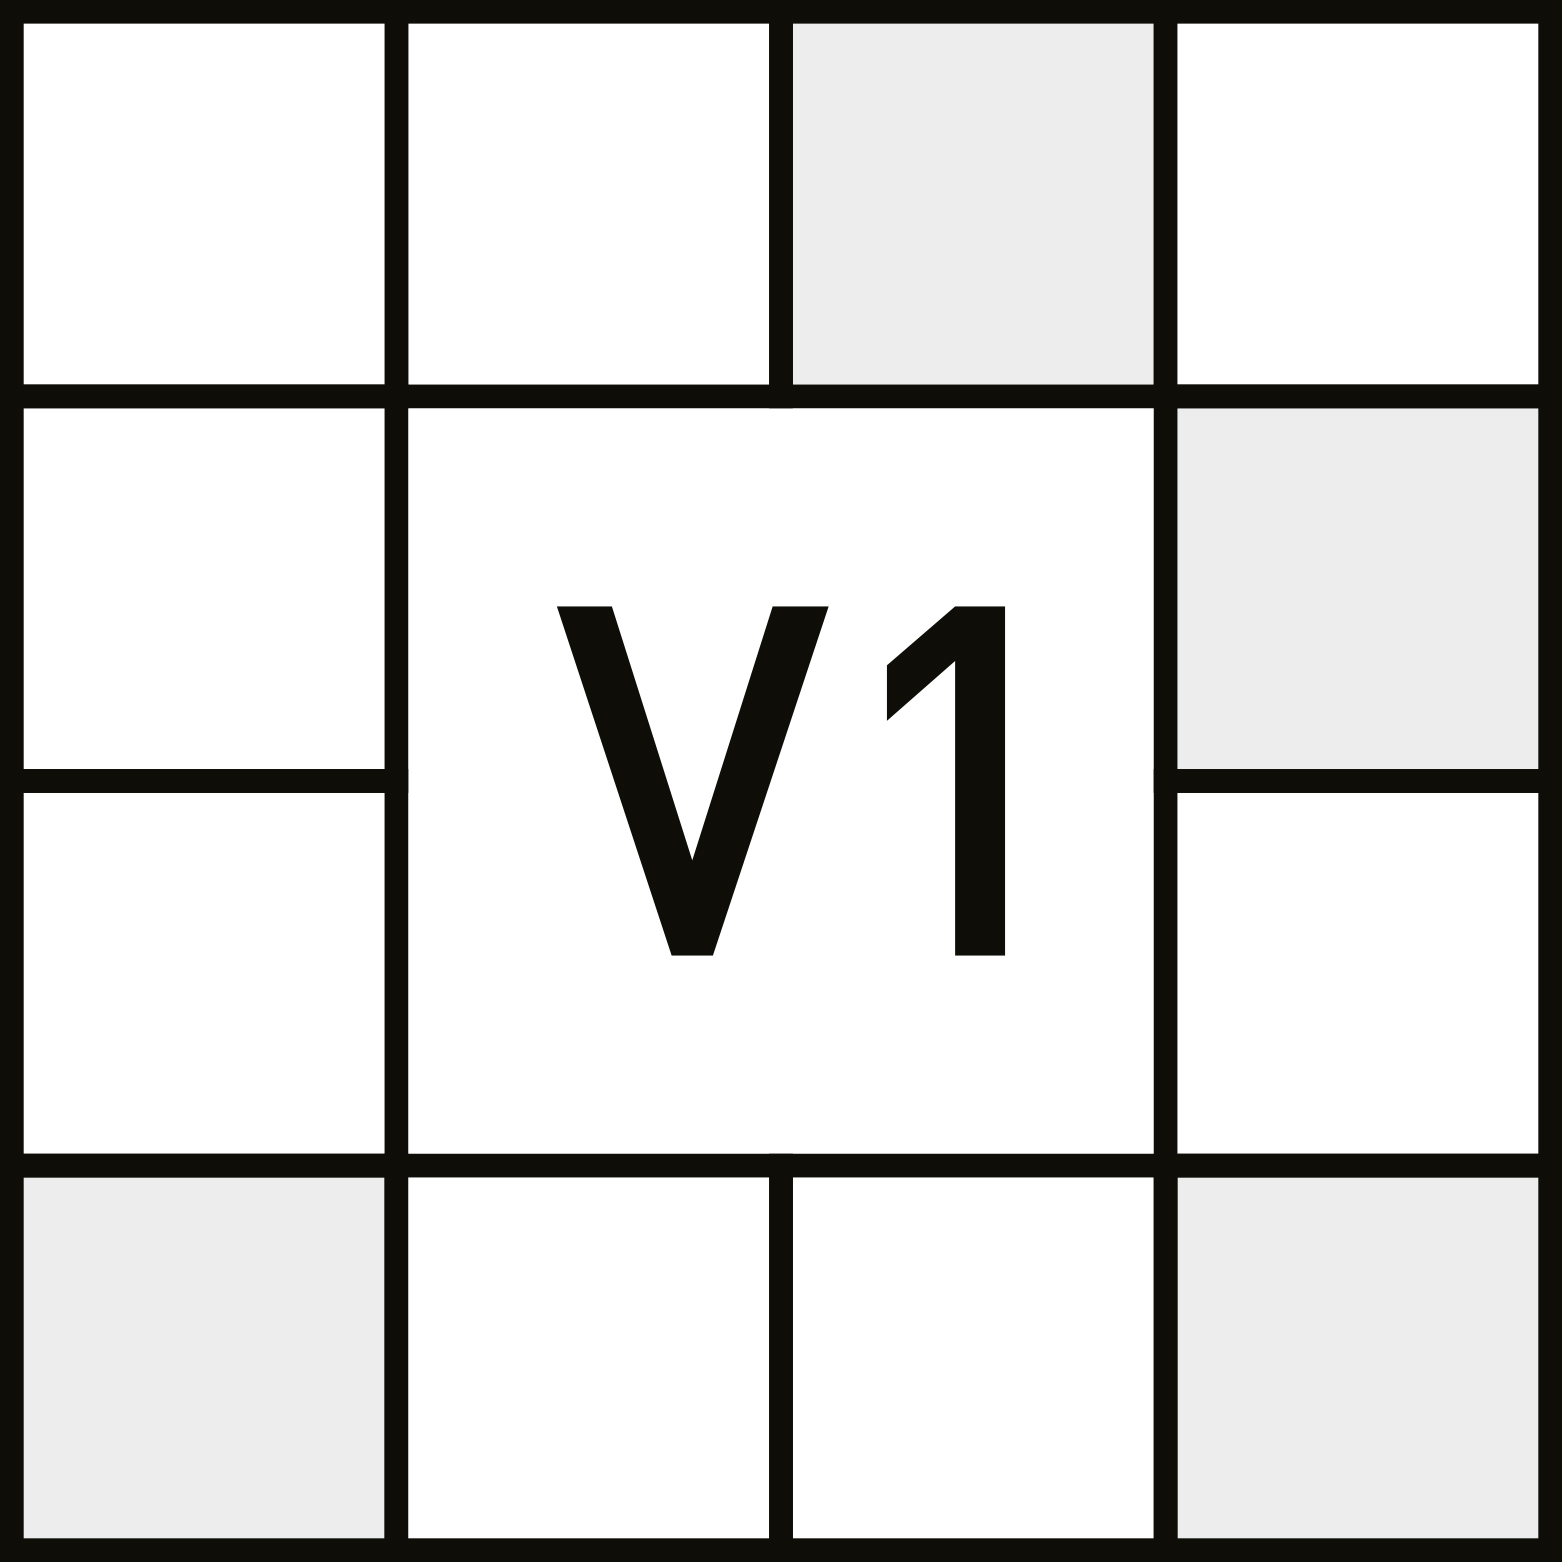 V1 - LIGEIRO - Aspecto uniforme. - ANSI A137.1 - Изменение оригинального цвета